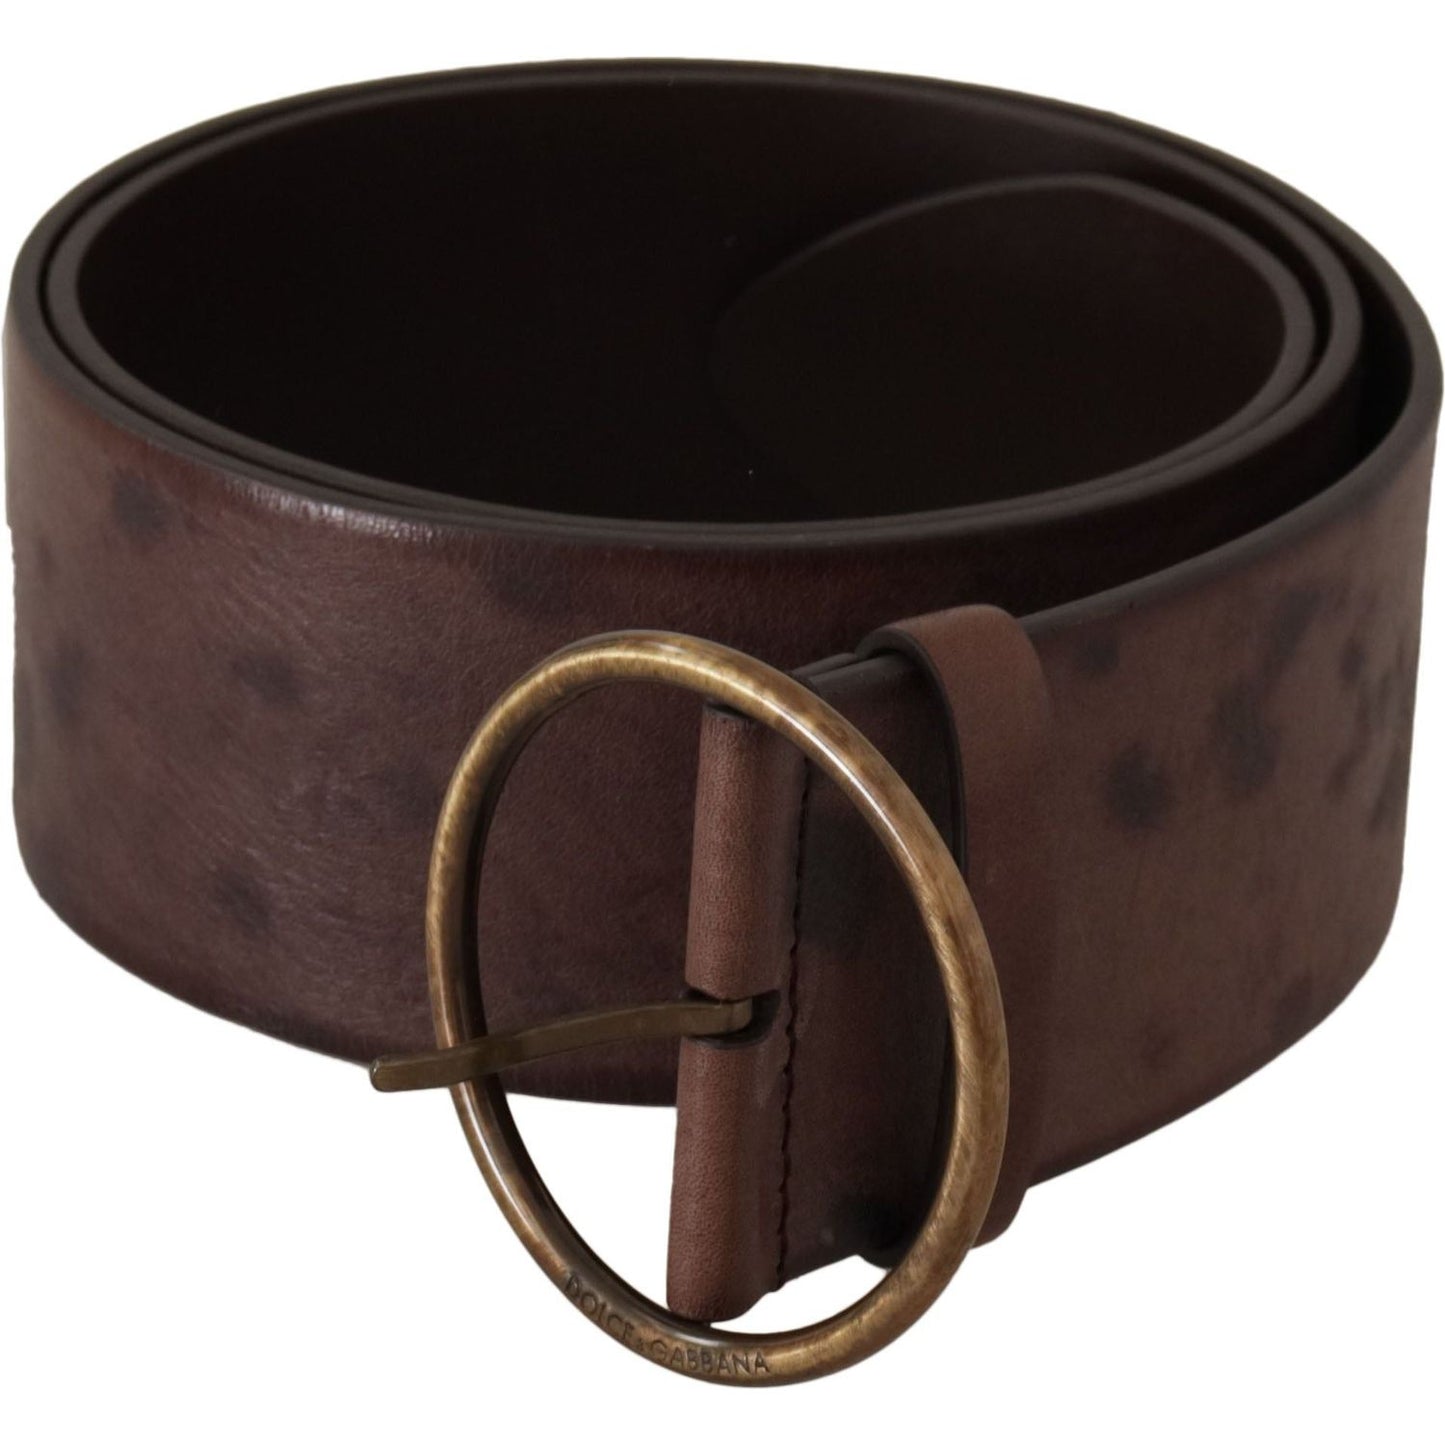 Dolce & Gabbana Elegant Dark Brown Leather Belt with Logo Buckle dark-brown-wide-calf-leather-logo-round-buckle-belt